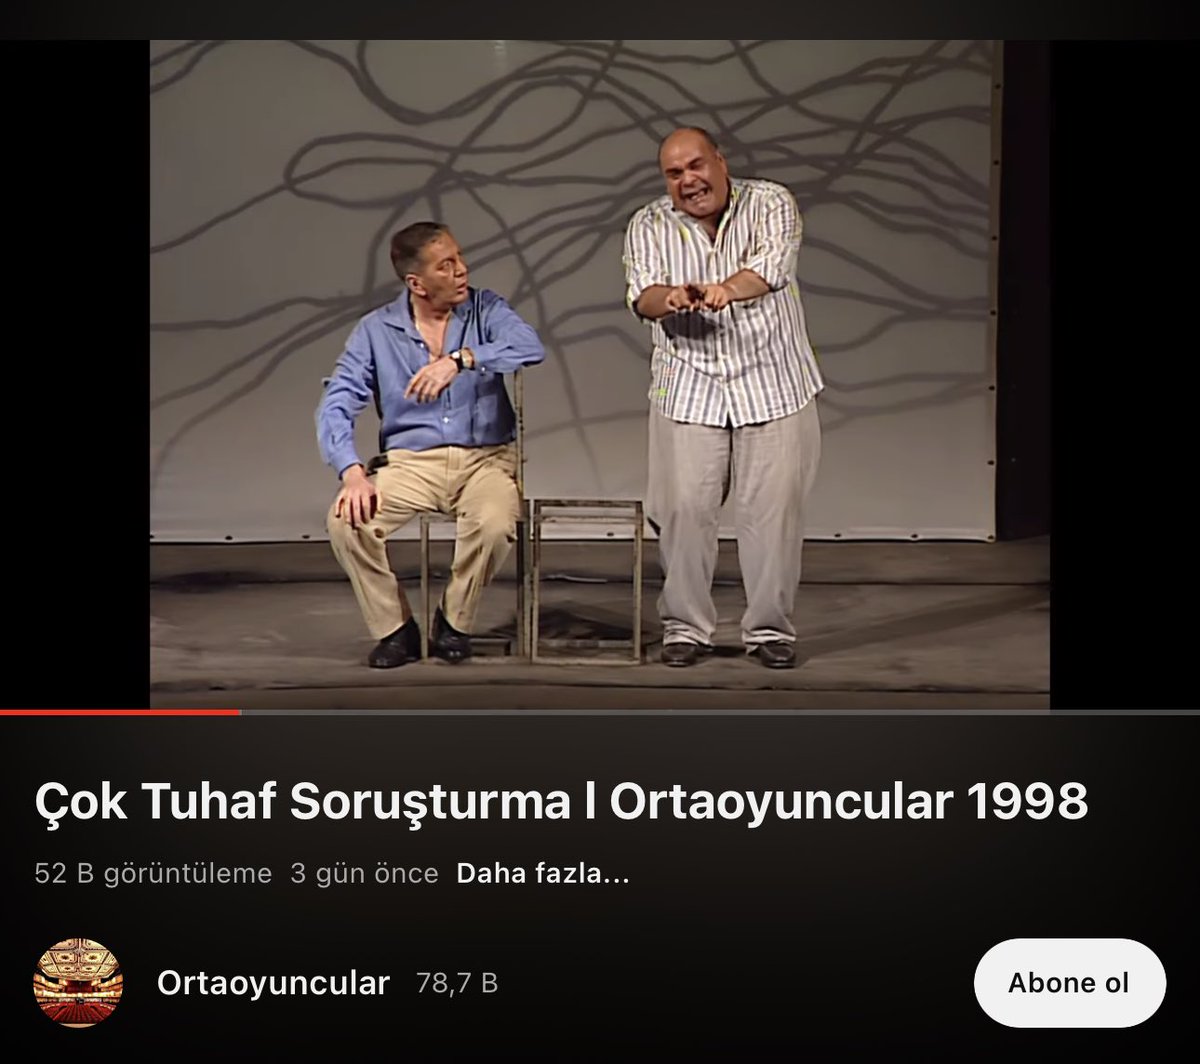 Ortaoyuncular 1998 tarihli, Ferhan Şensoy’un Pardon filminin tiyatro versiyonunu 2 gün önce YouTube’a yükledi. Tuncel Kurtiz’den Rasim Öztekin’e kadro çok daha iyi. İlgilisine duyurulur